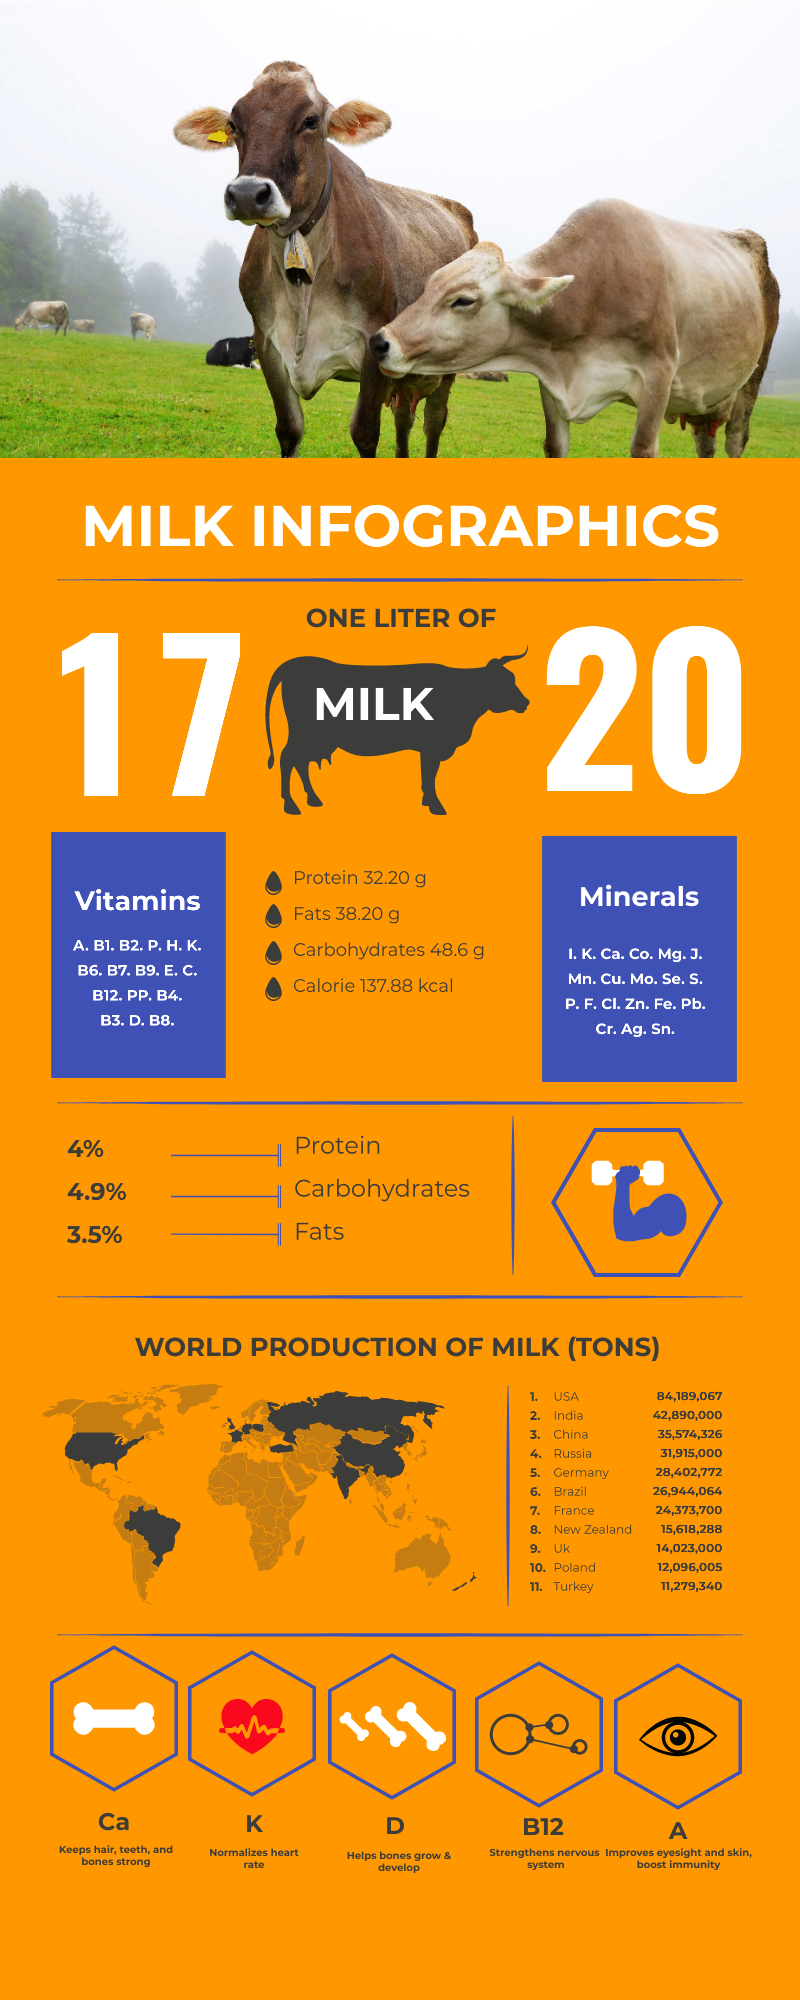 cow milk benefit